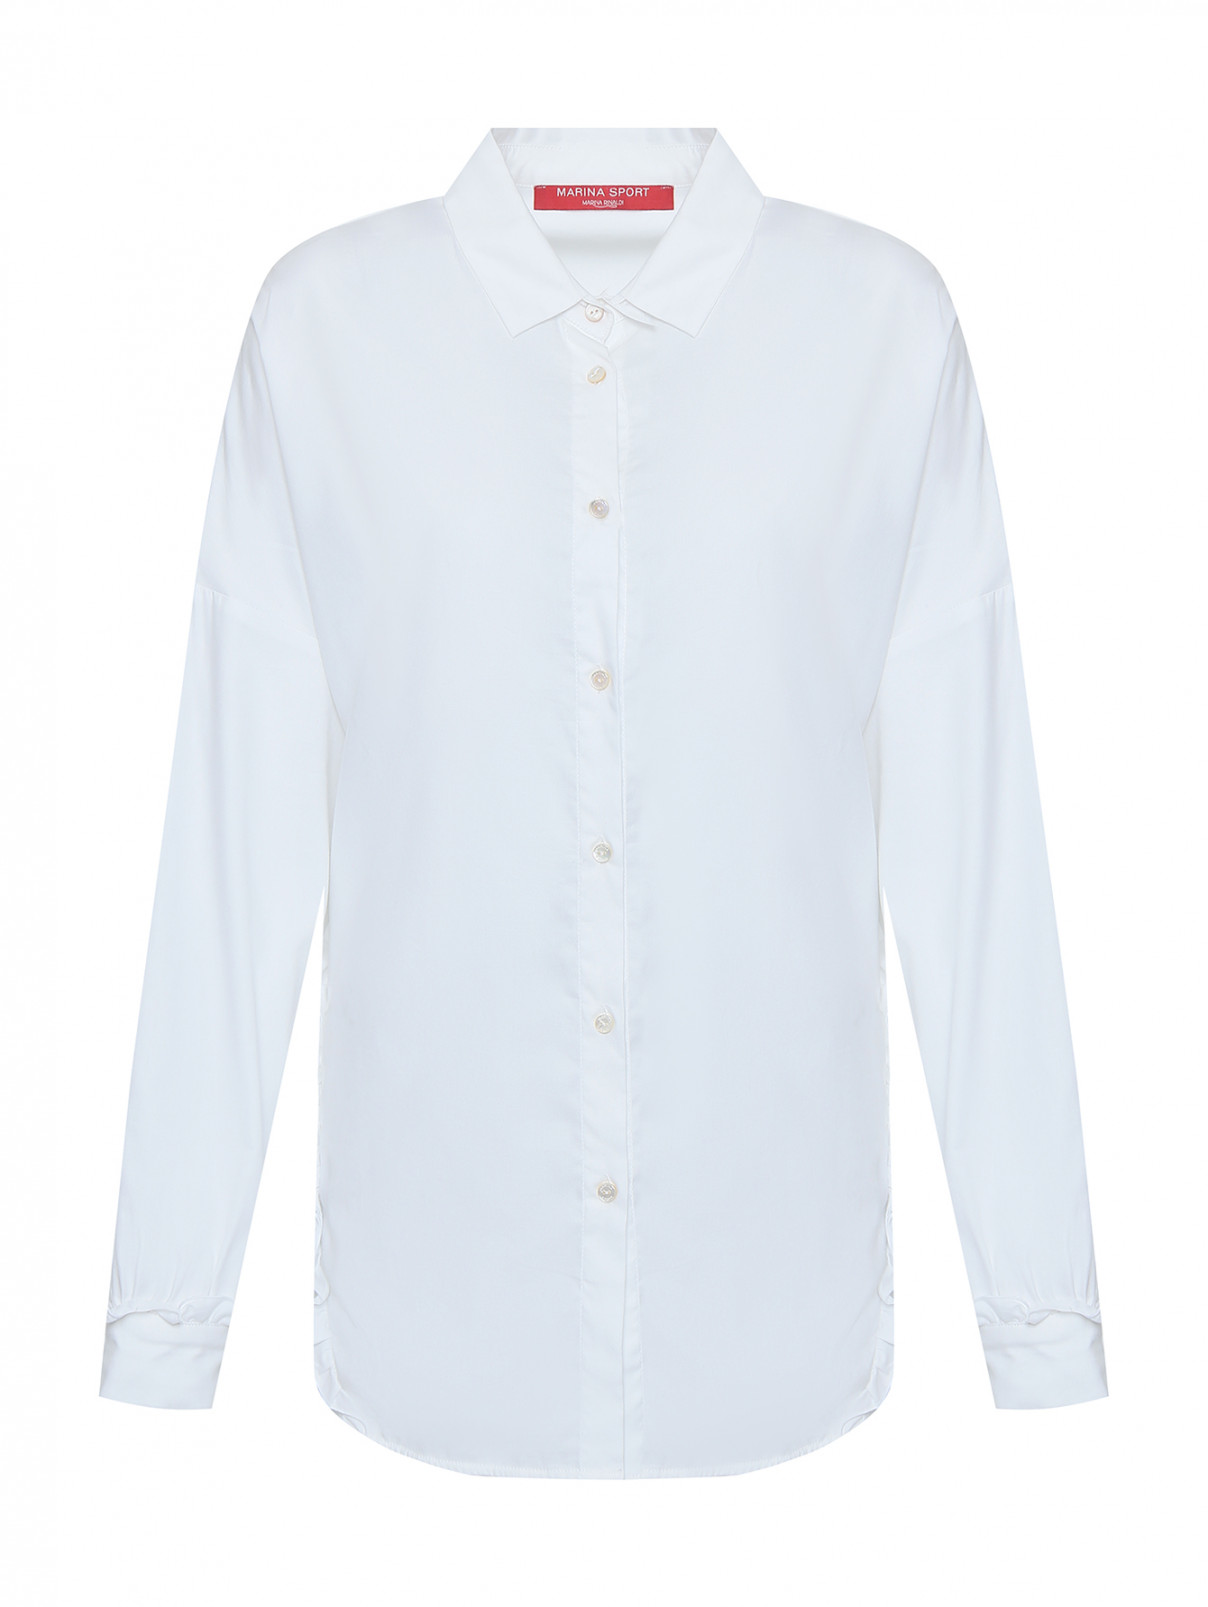 Рубашка свободного кроя, из хлопка , с рюшами Marina Rinaldi  –  Общий вид  – Цвет:  Белый